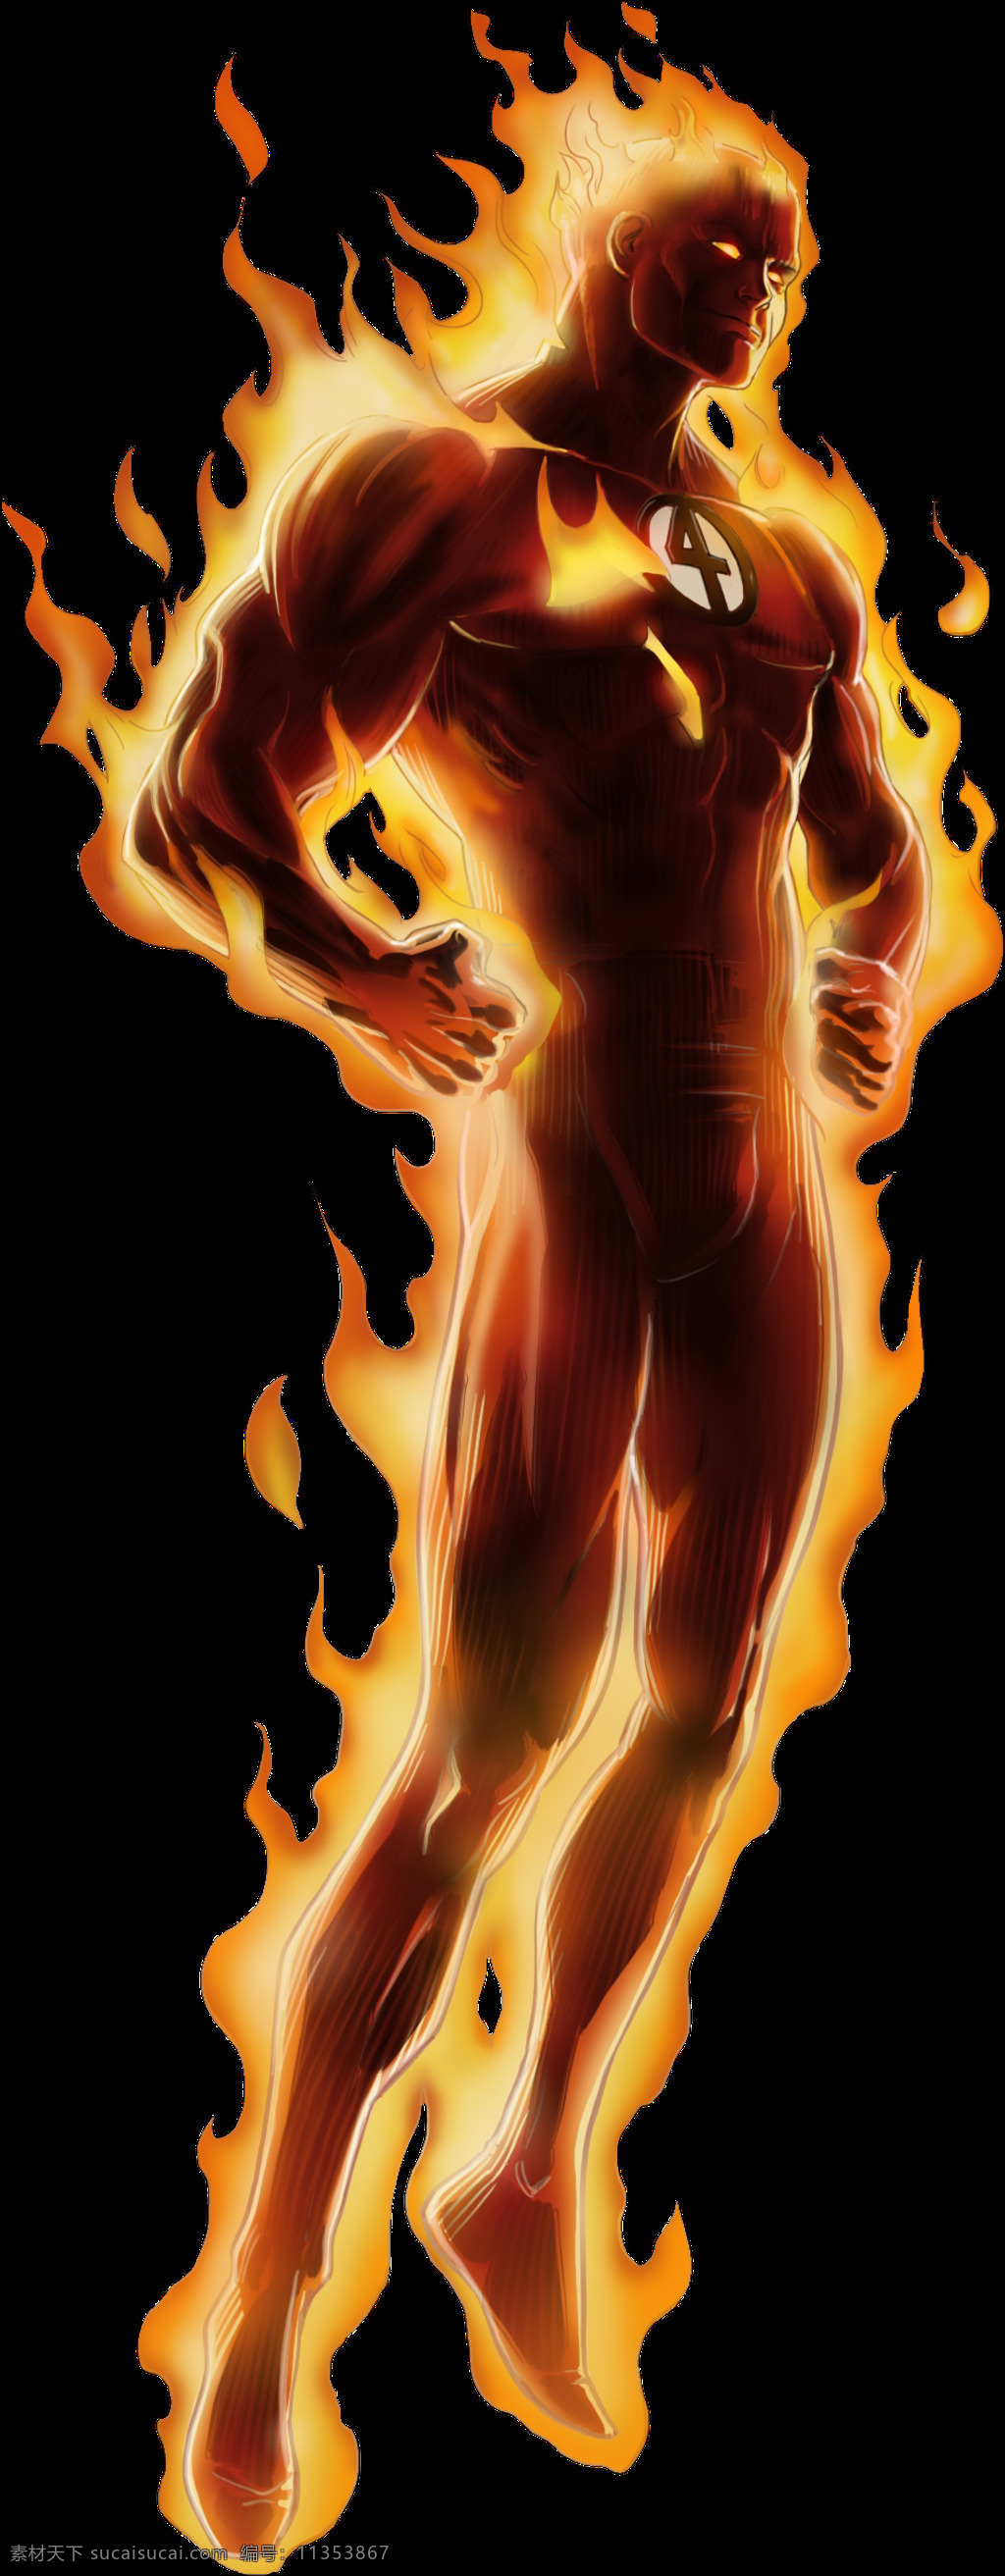 熊熊 燃烧 火 人 免 抠 透明 火人图片 霹雳火图片 霹雳火漫画图 霹雳火视觉图 霹雳火创意图 火人漫画 燃烧的人 着火的人 点着的火人